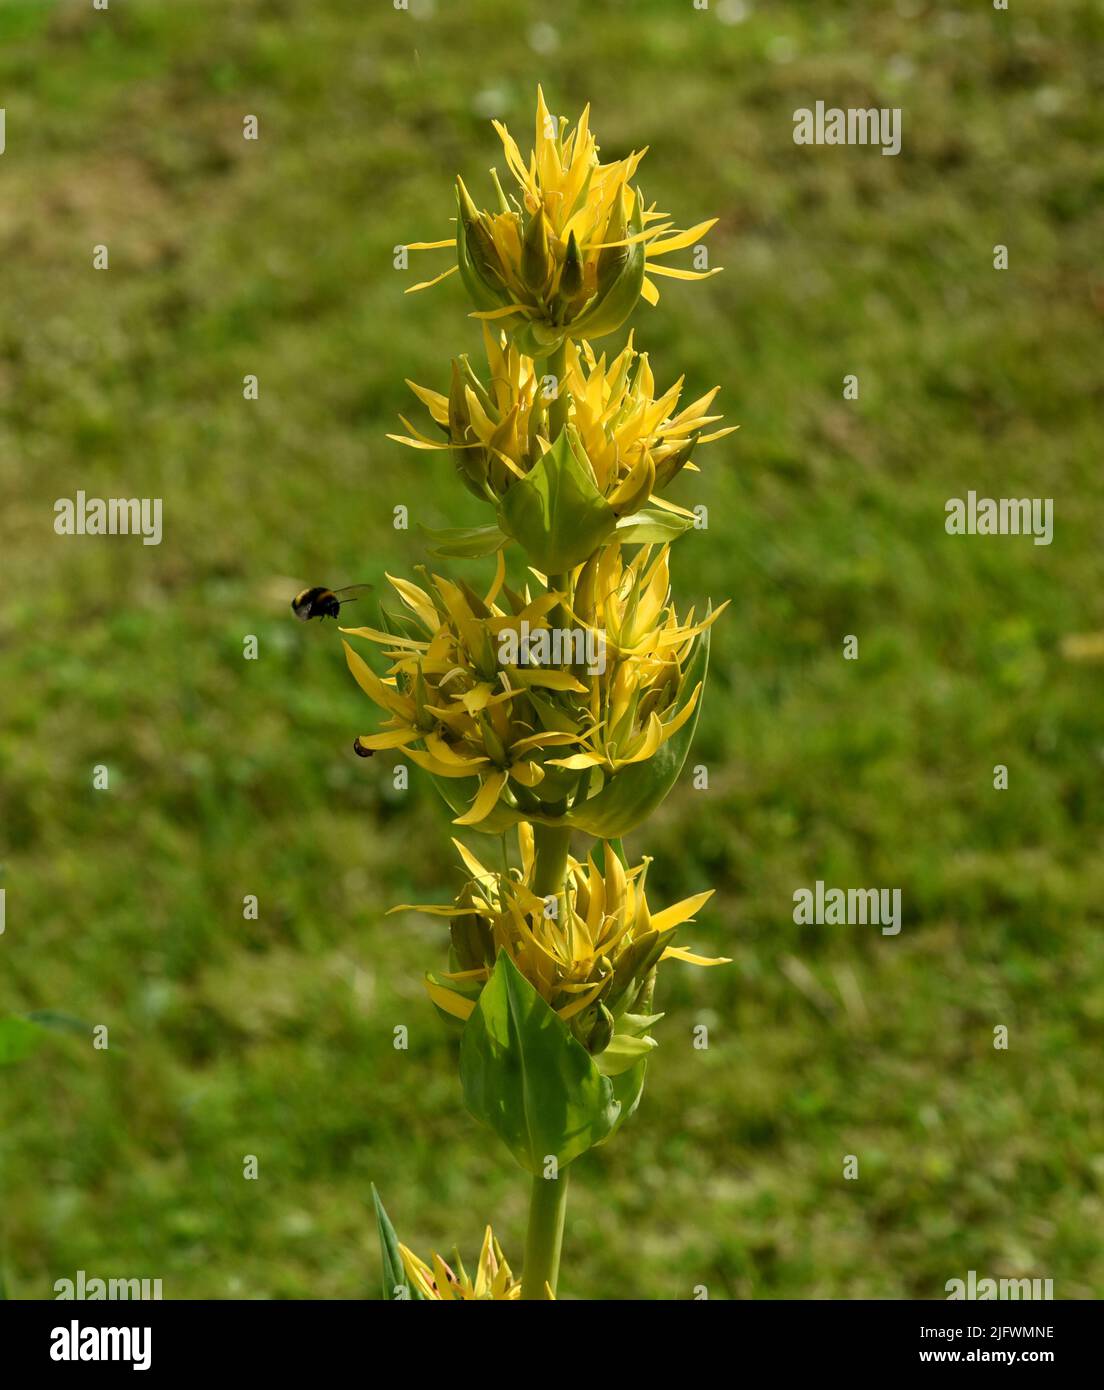 Gelber Enzian, Gentiana Lutea ist eine wichtige Heilpflanze und wird auch in der Medizin verwendet. Gentian jaune, Gentiana Lutea est un médicament important Banque D'Images